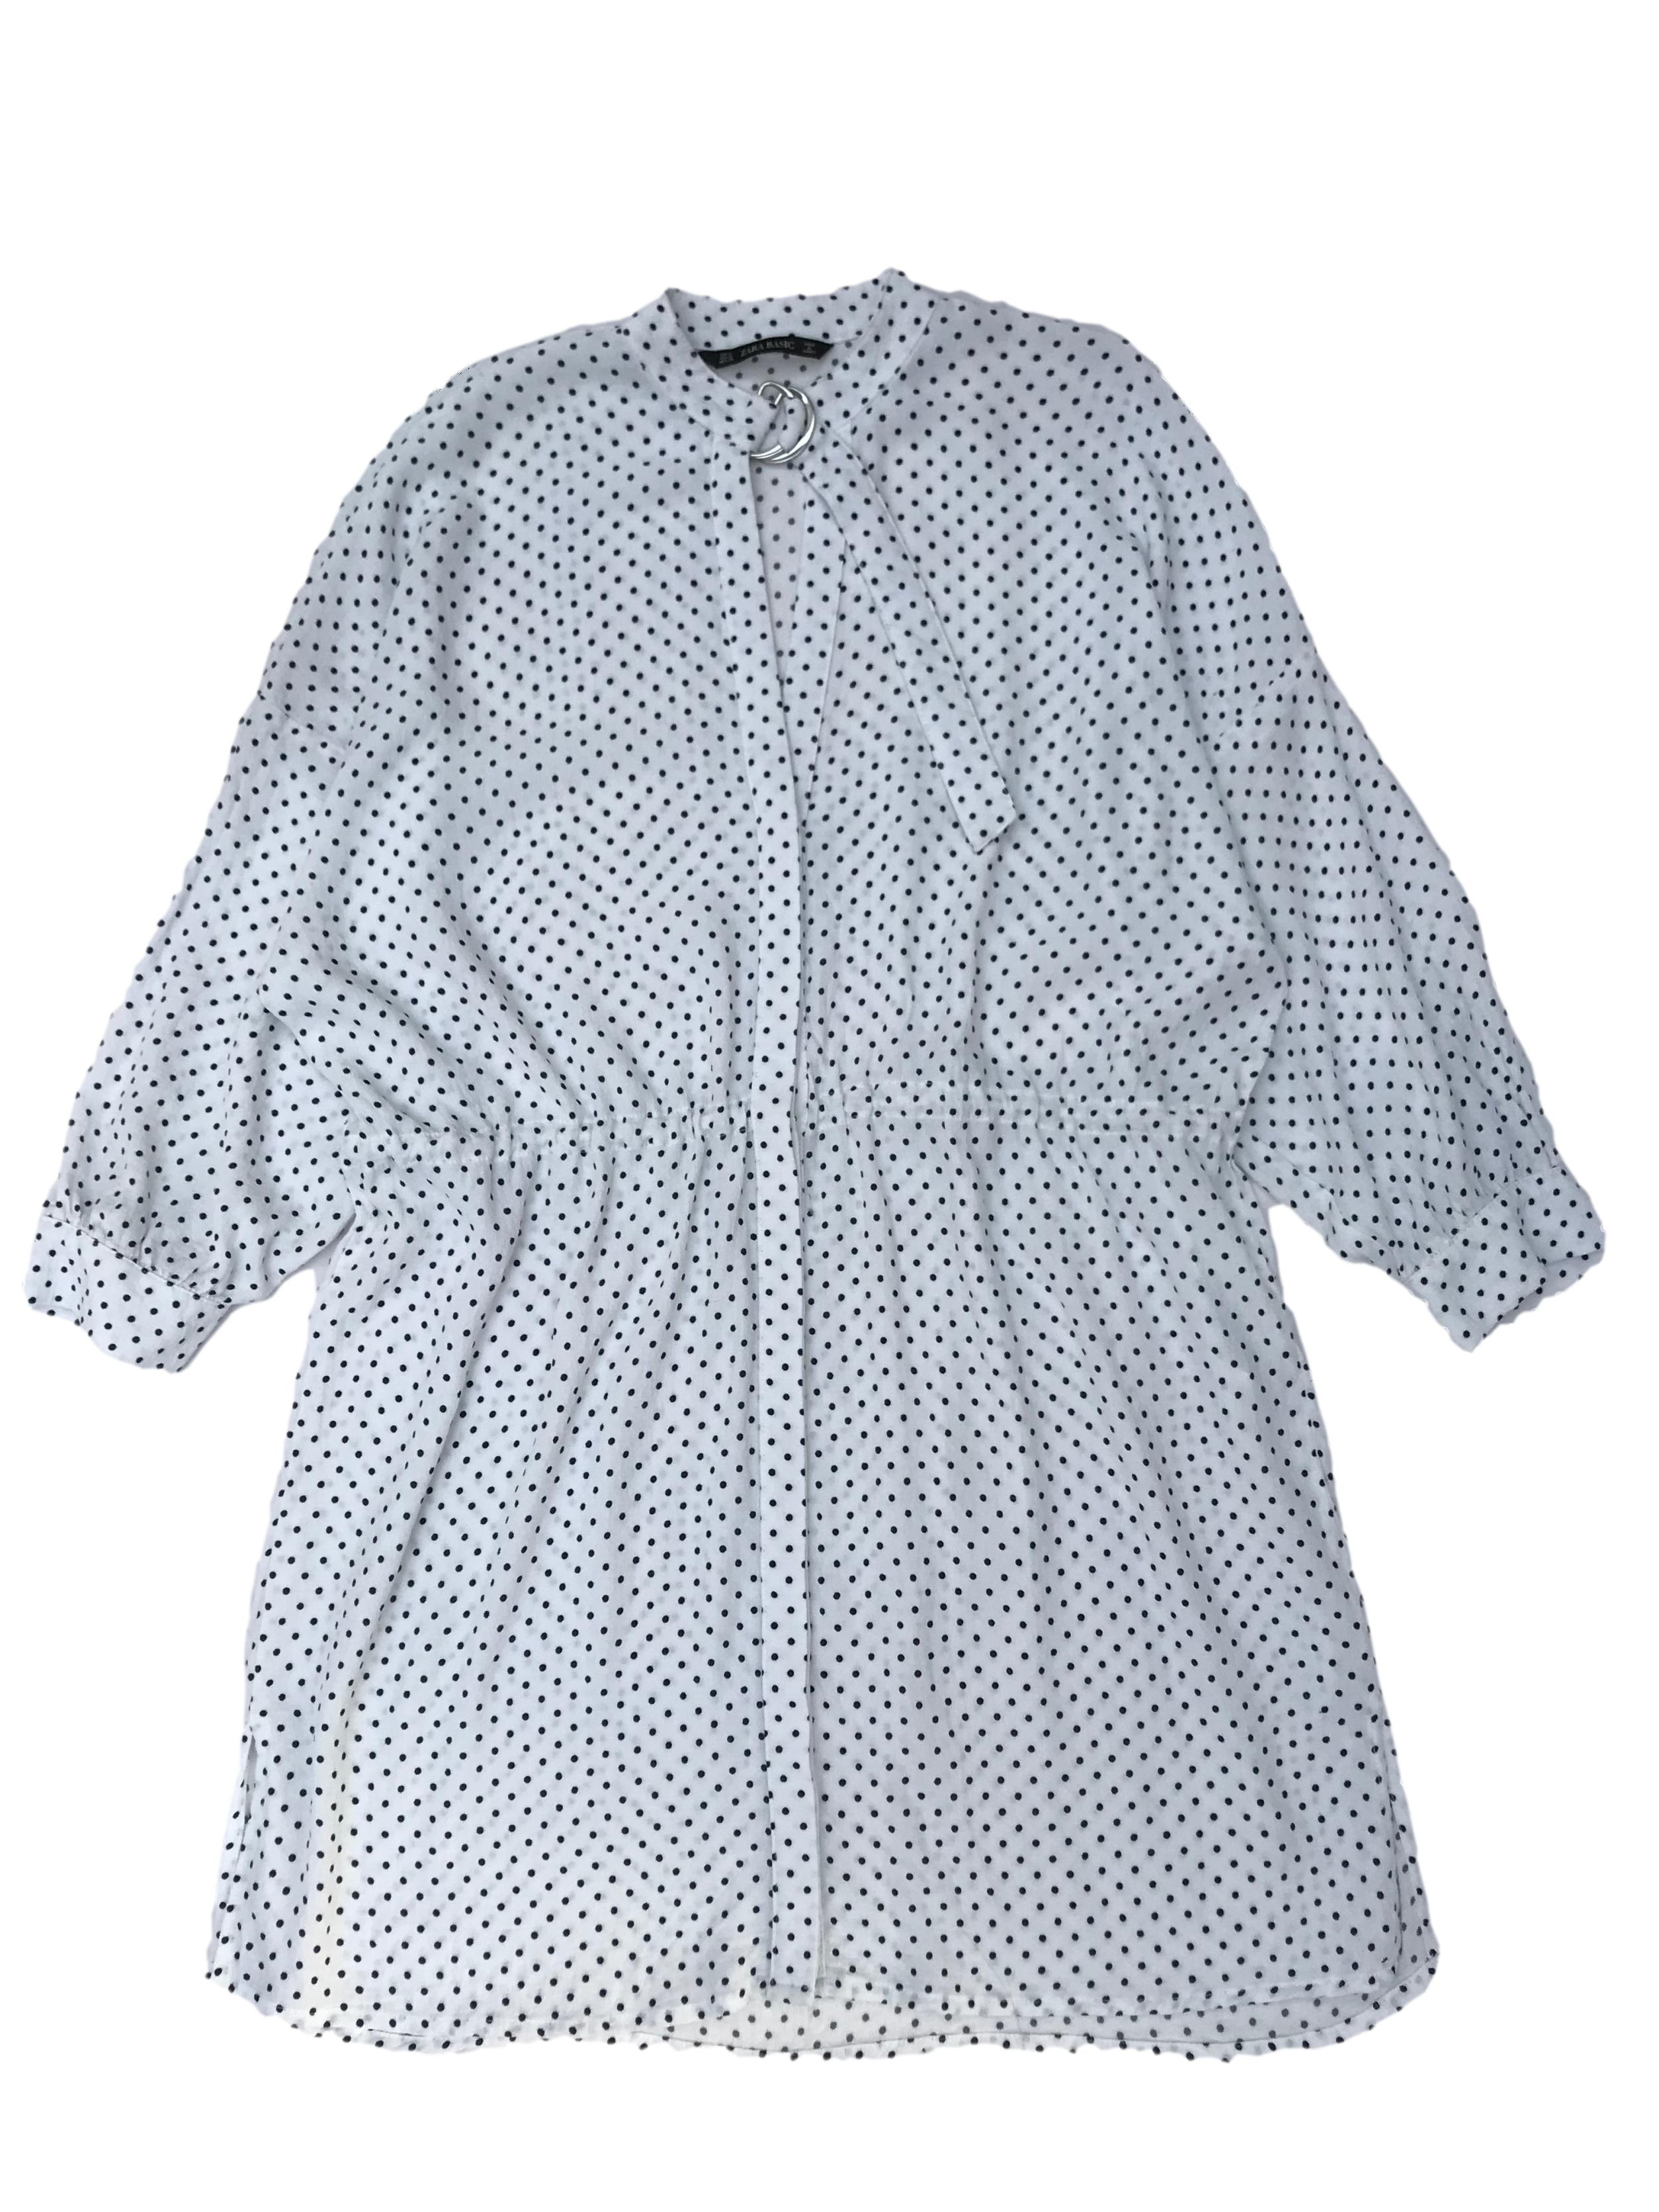 Vestido oversize Zara 100% viscosa texturada blanca con dots azules, fila de botones al centro, escote en V y correa en el cuello, tira para regular la cintura. Ancho 120cm Largo 88cm